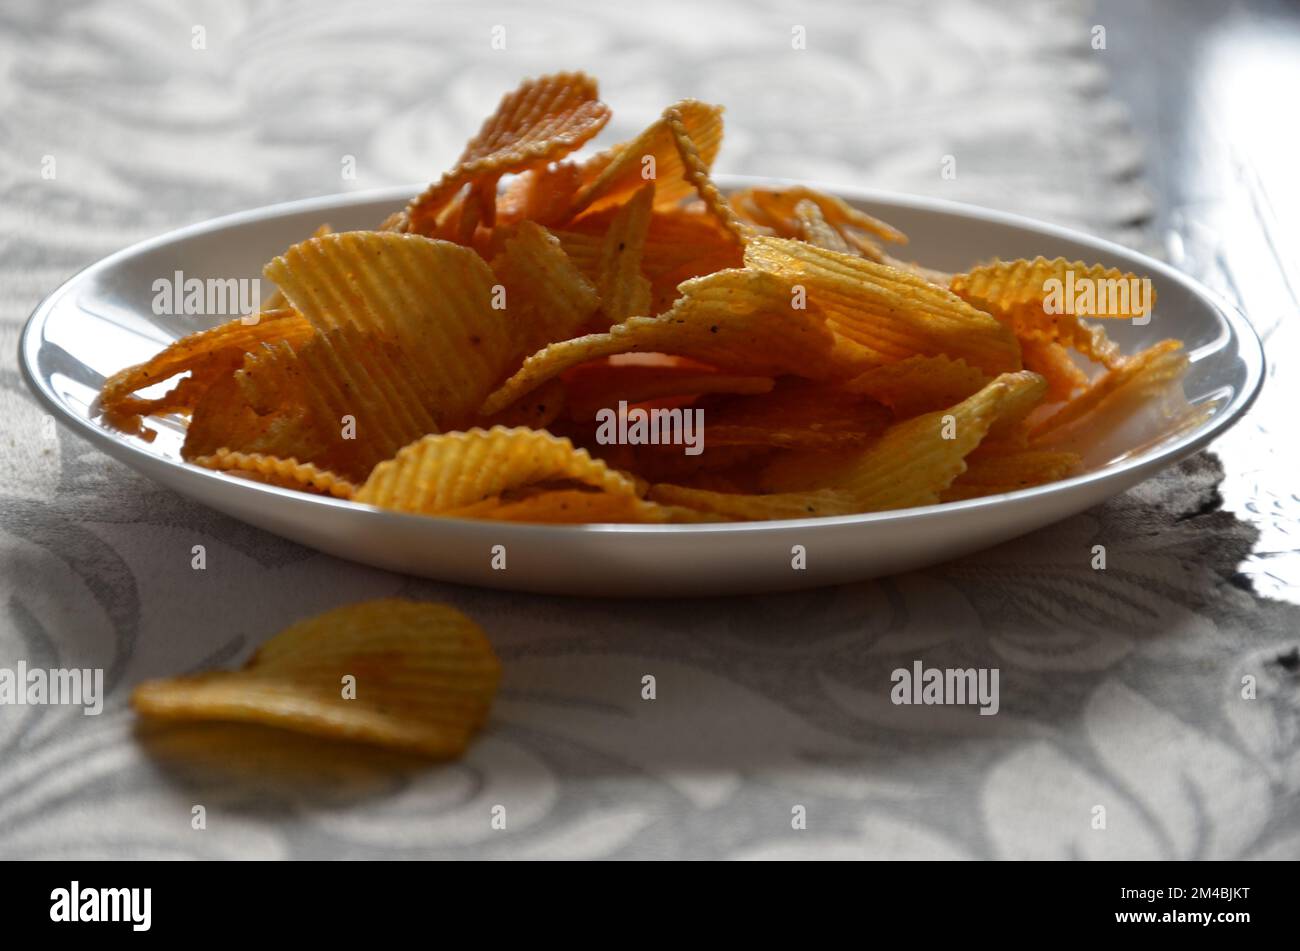 Patatine fritte in un piatto. Immagine stock. Foto Stock